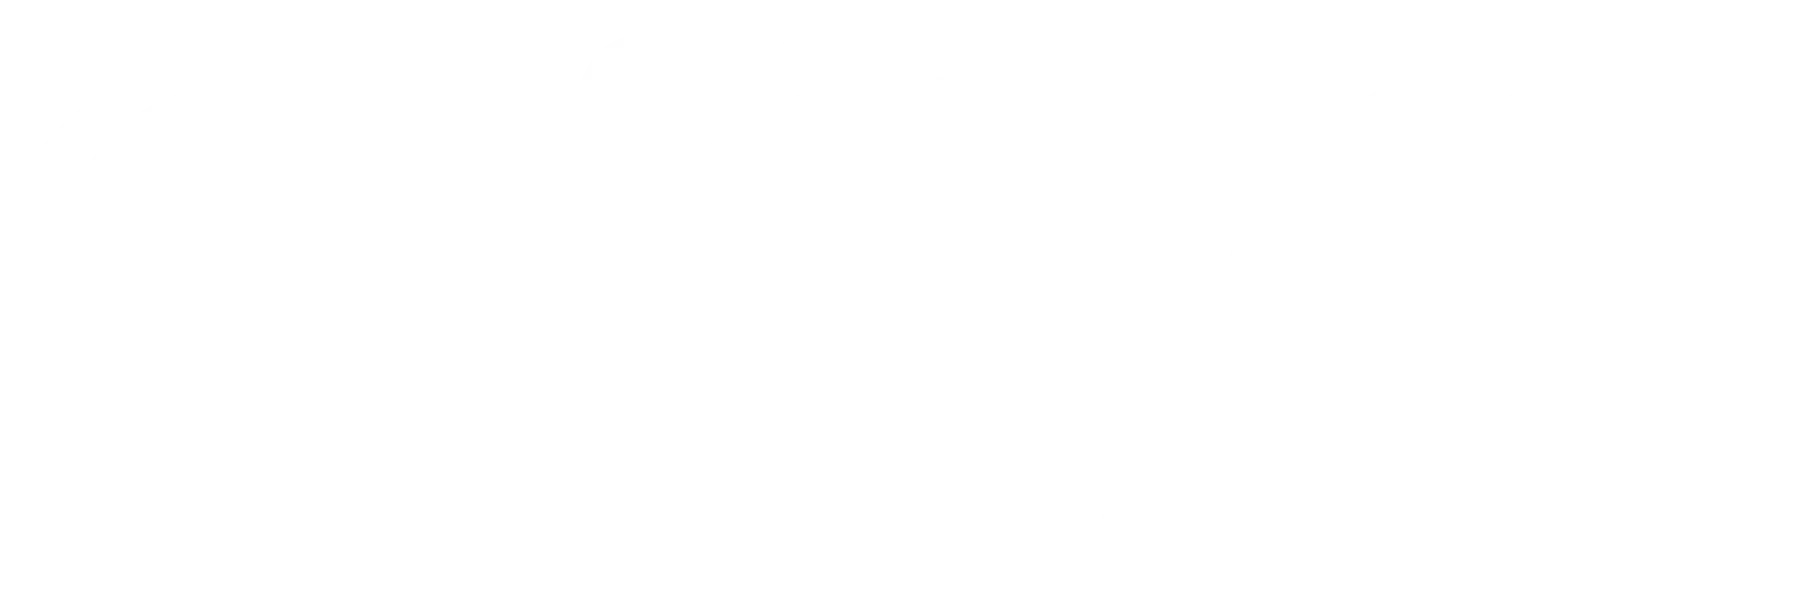 Cheshire chamber of commerce logo